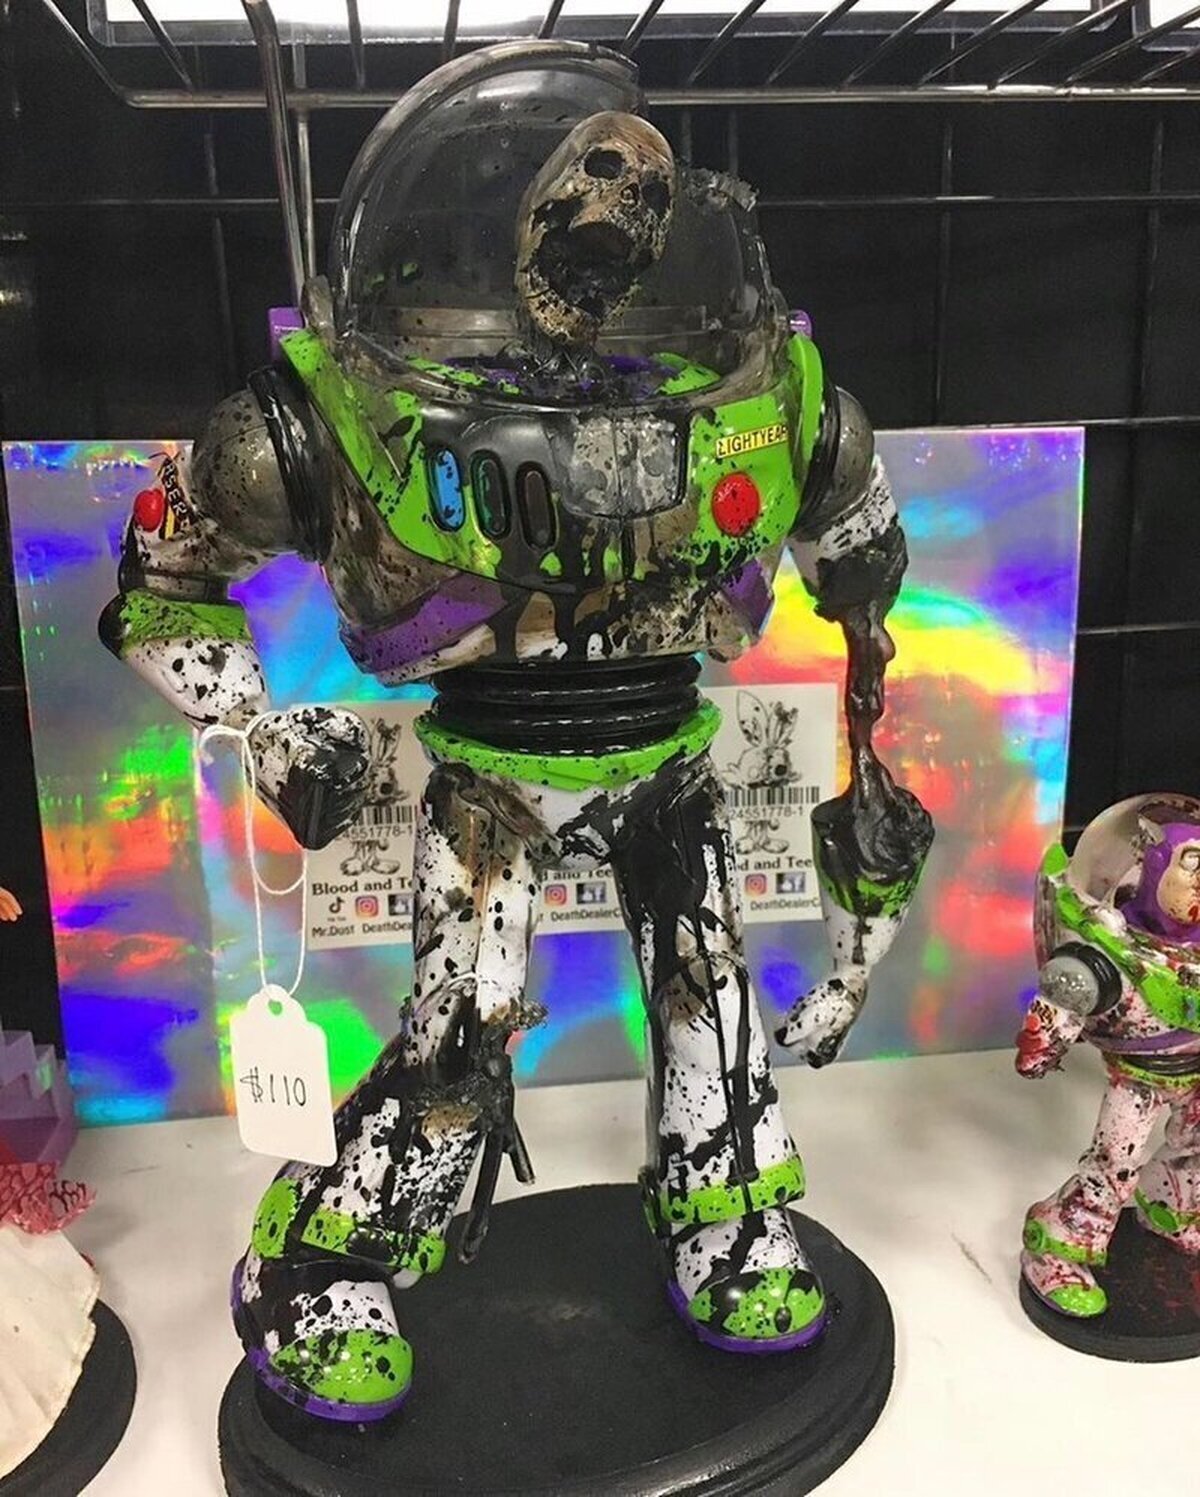 La versión más terrorífica de Buzz en una estatua de casi 50 centímetros